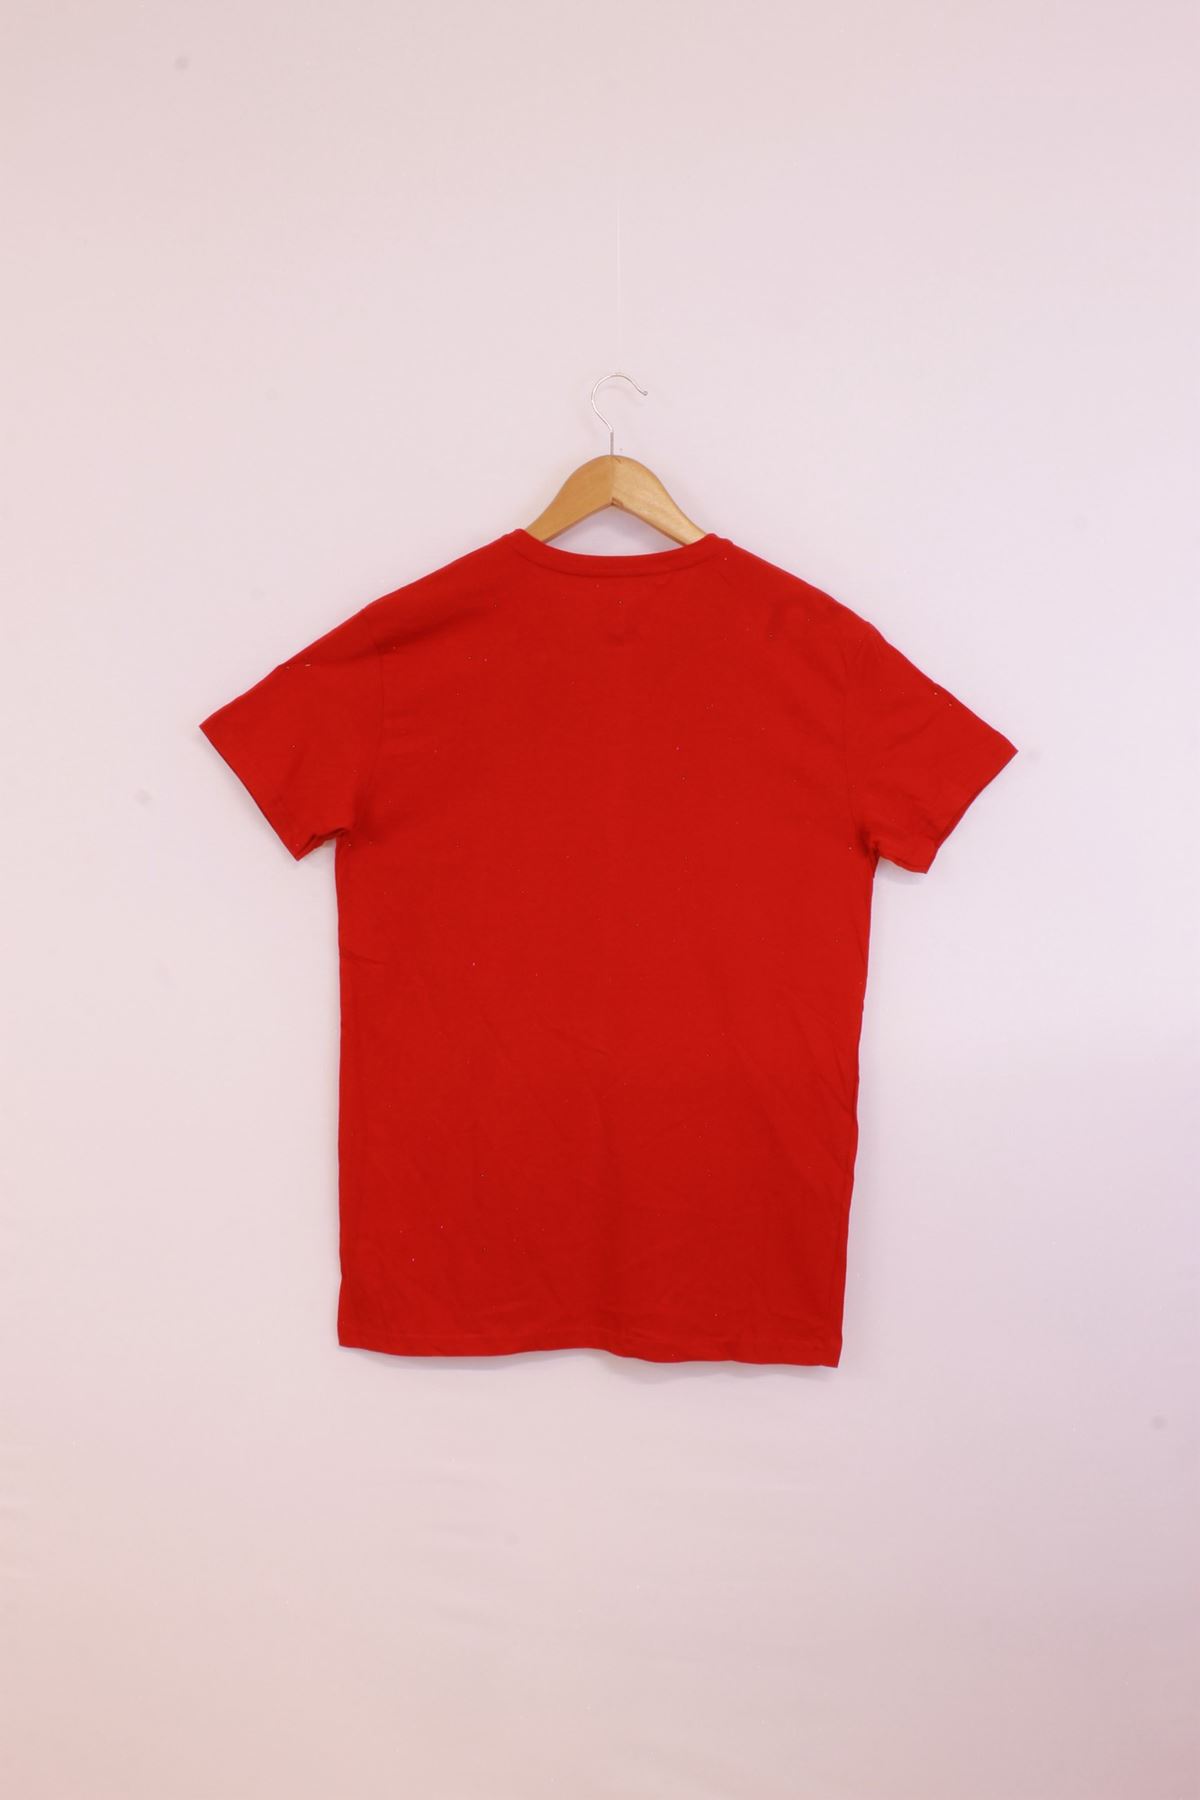 Giyinsen Erkek Kırmızı Tişört - 23YL71595043